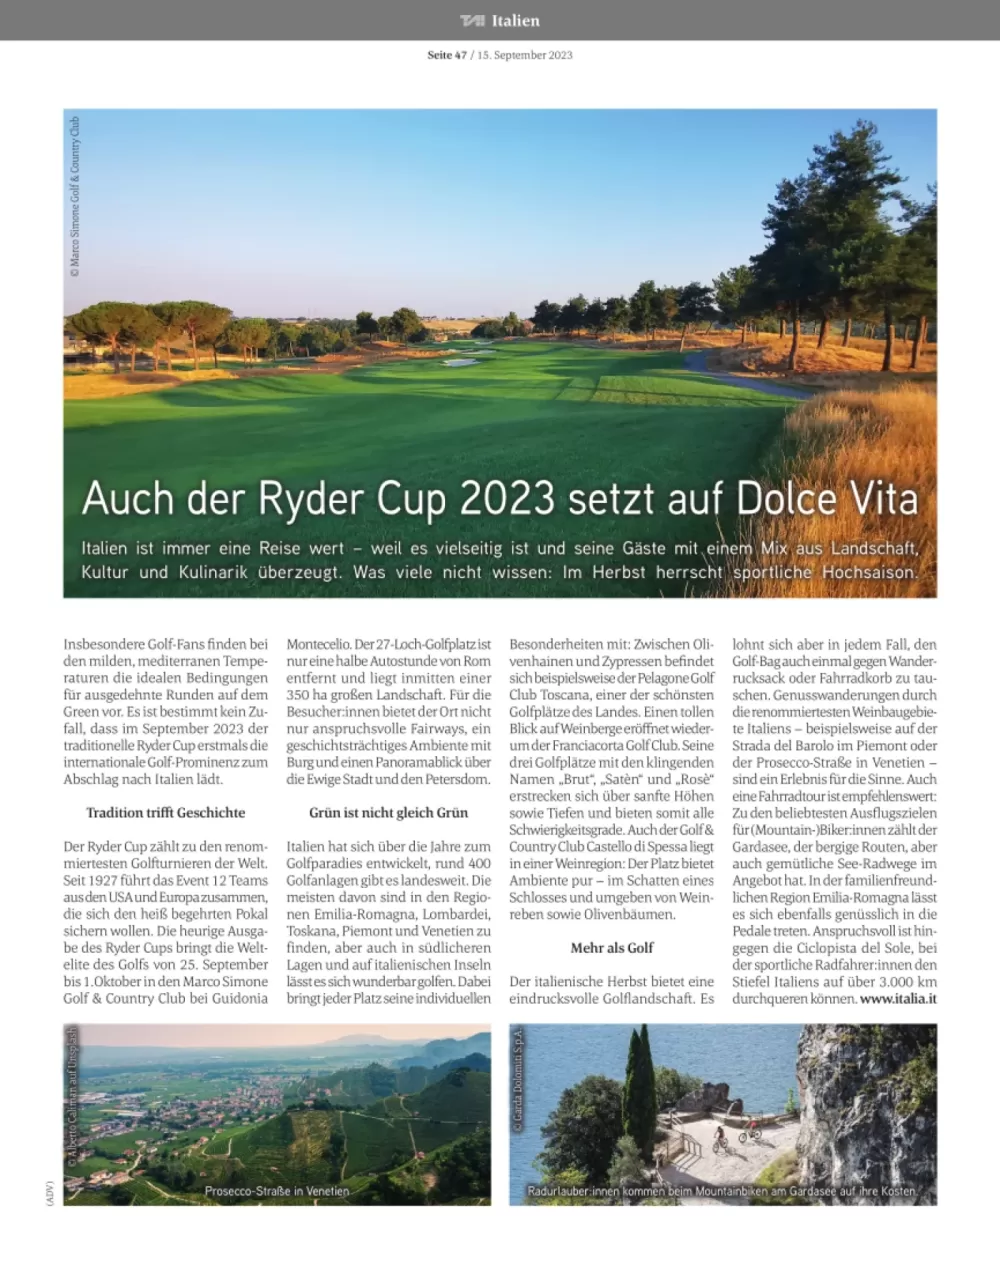 Anche la Ryder Cup  punta sulla Dolce Vita - Tourismuswirtschaft Austria & International T.A.I. - Vienna